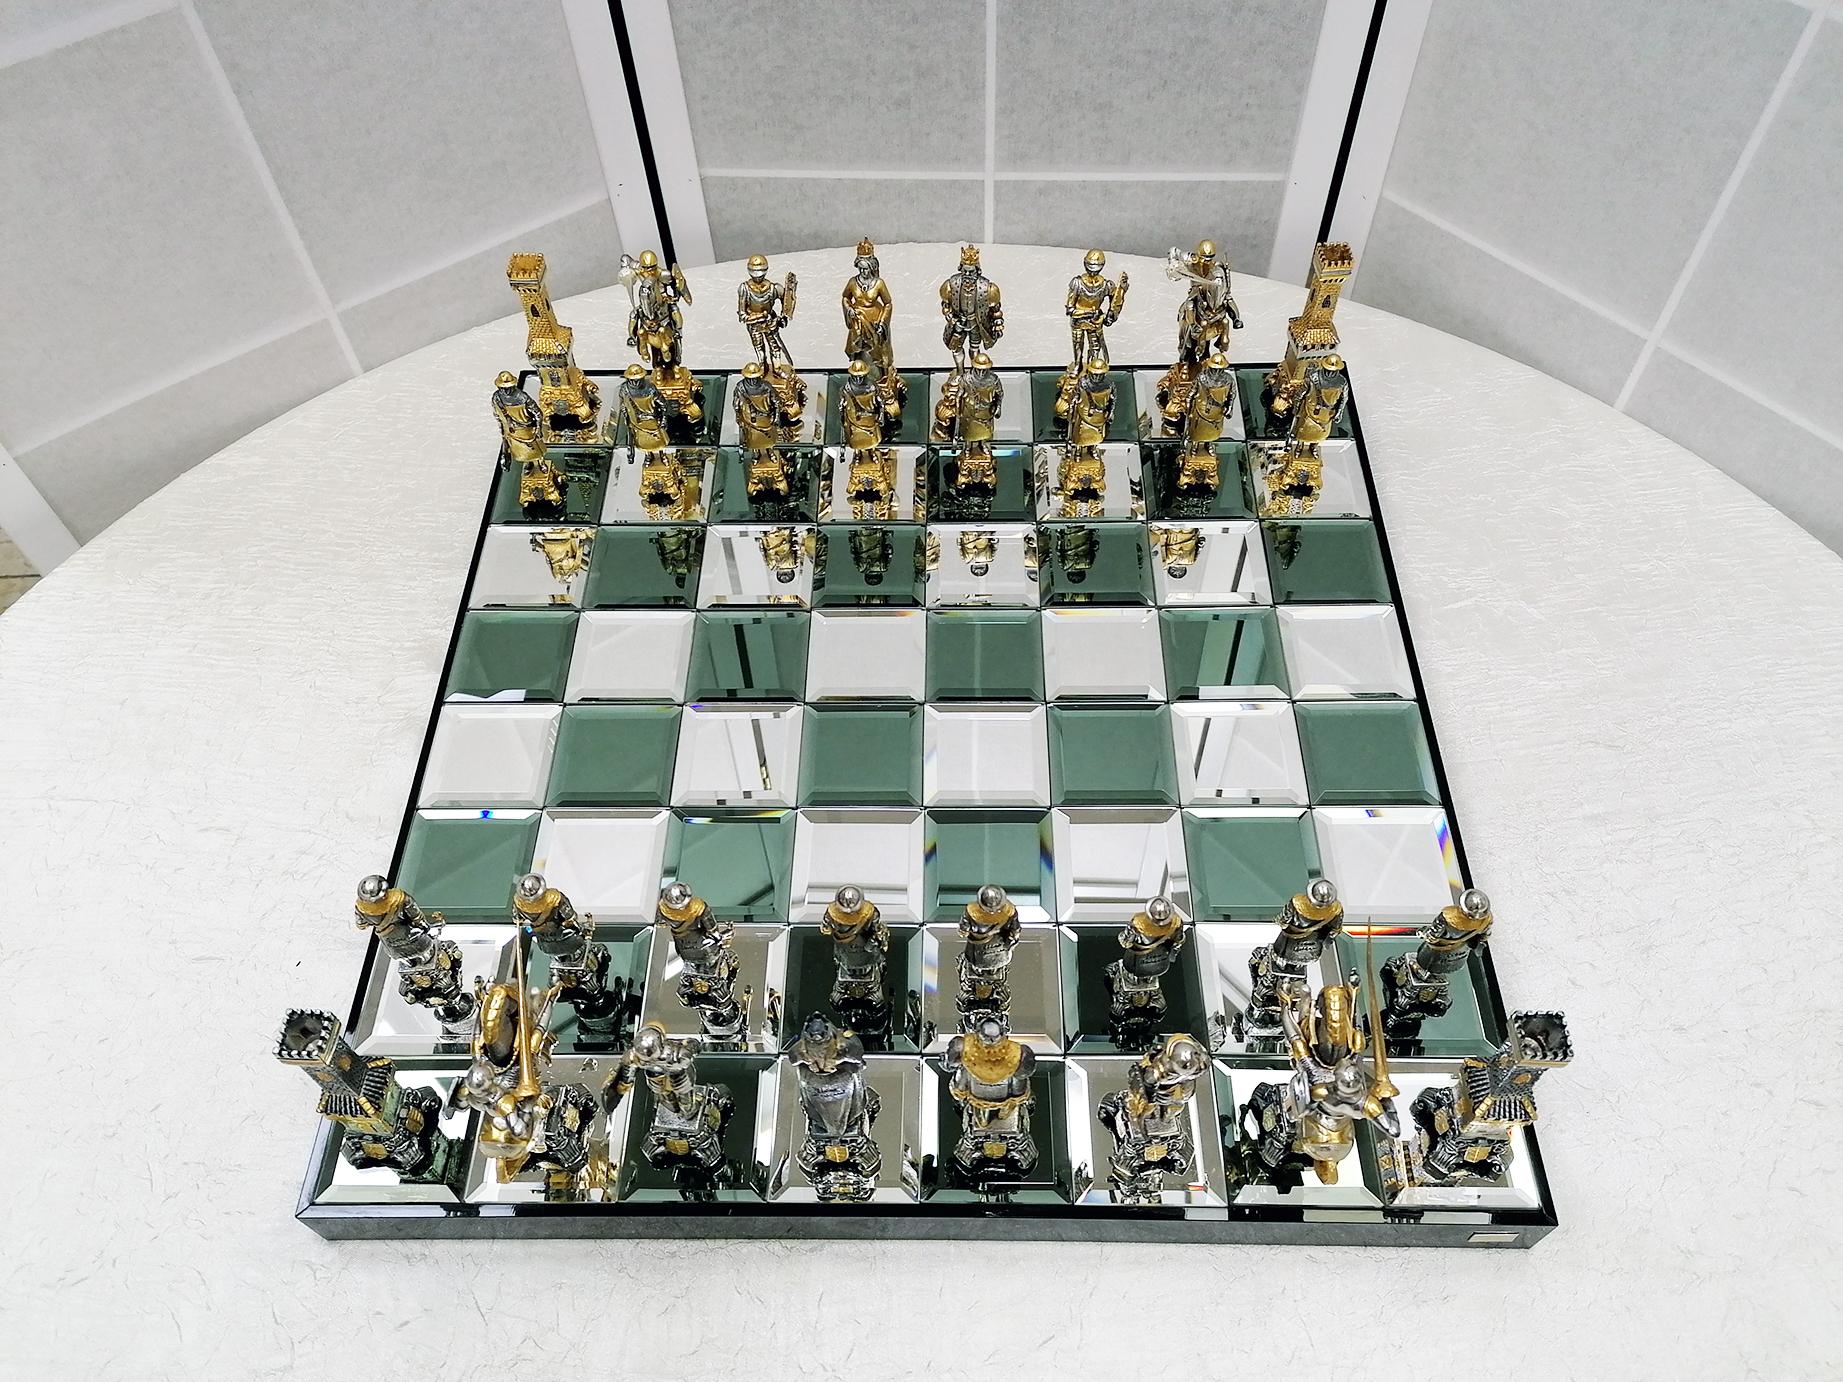 piero benzoni chess set